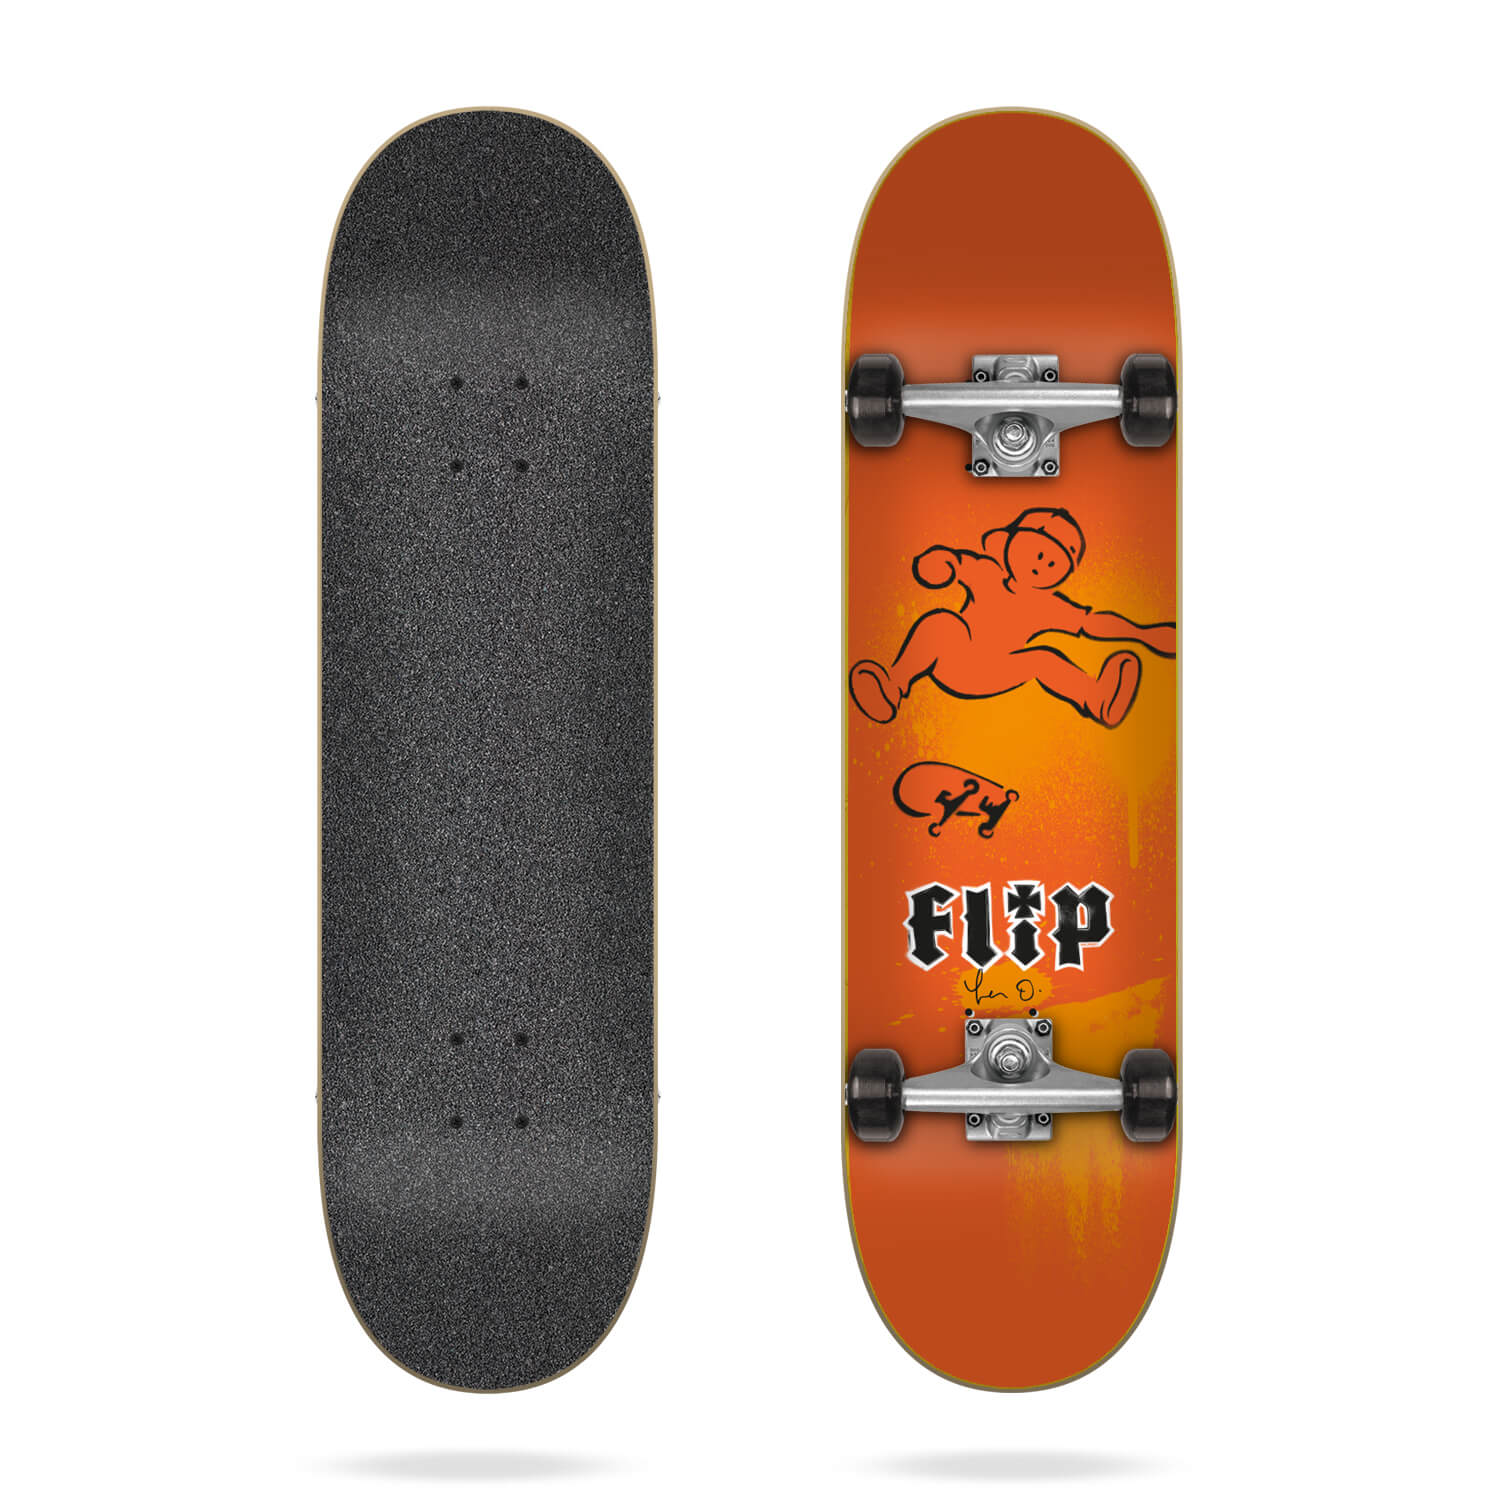 Flip Oliveira Doughboy 7.87" compleet skateboard